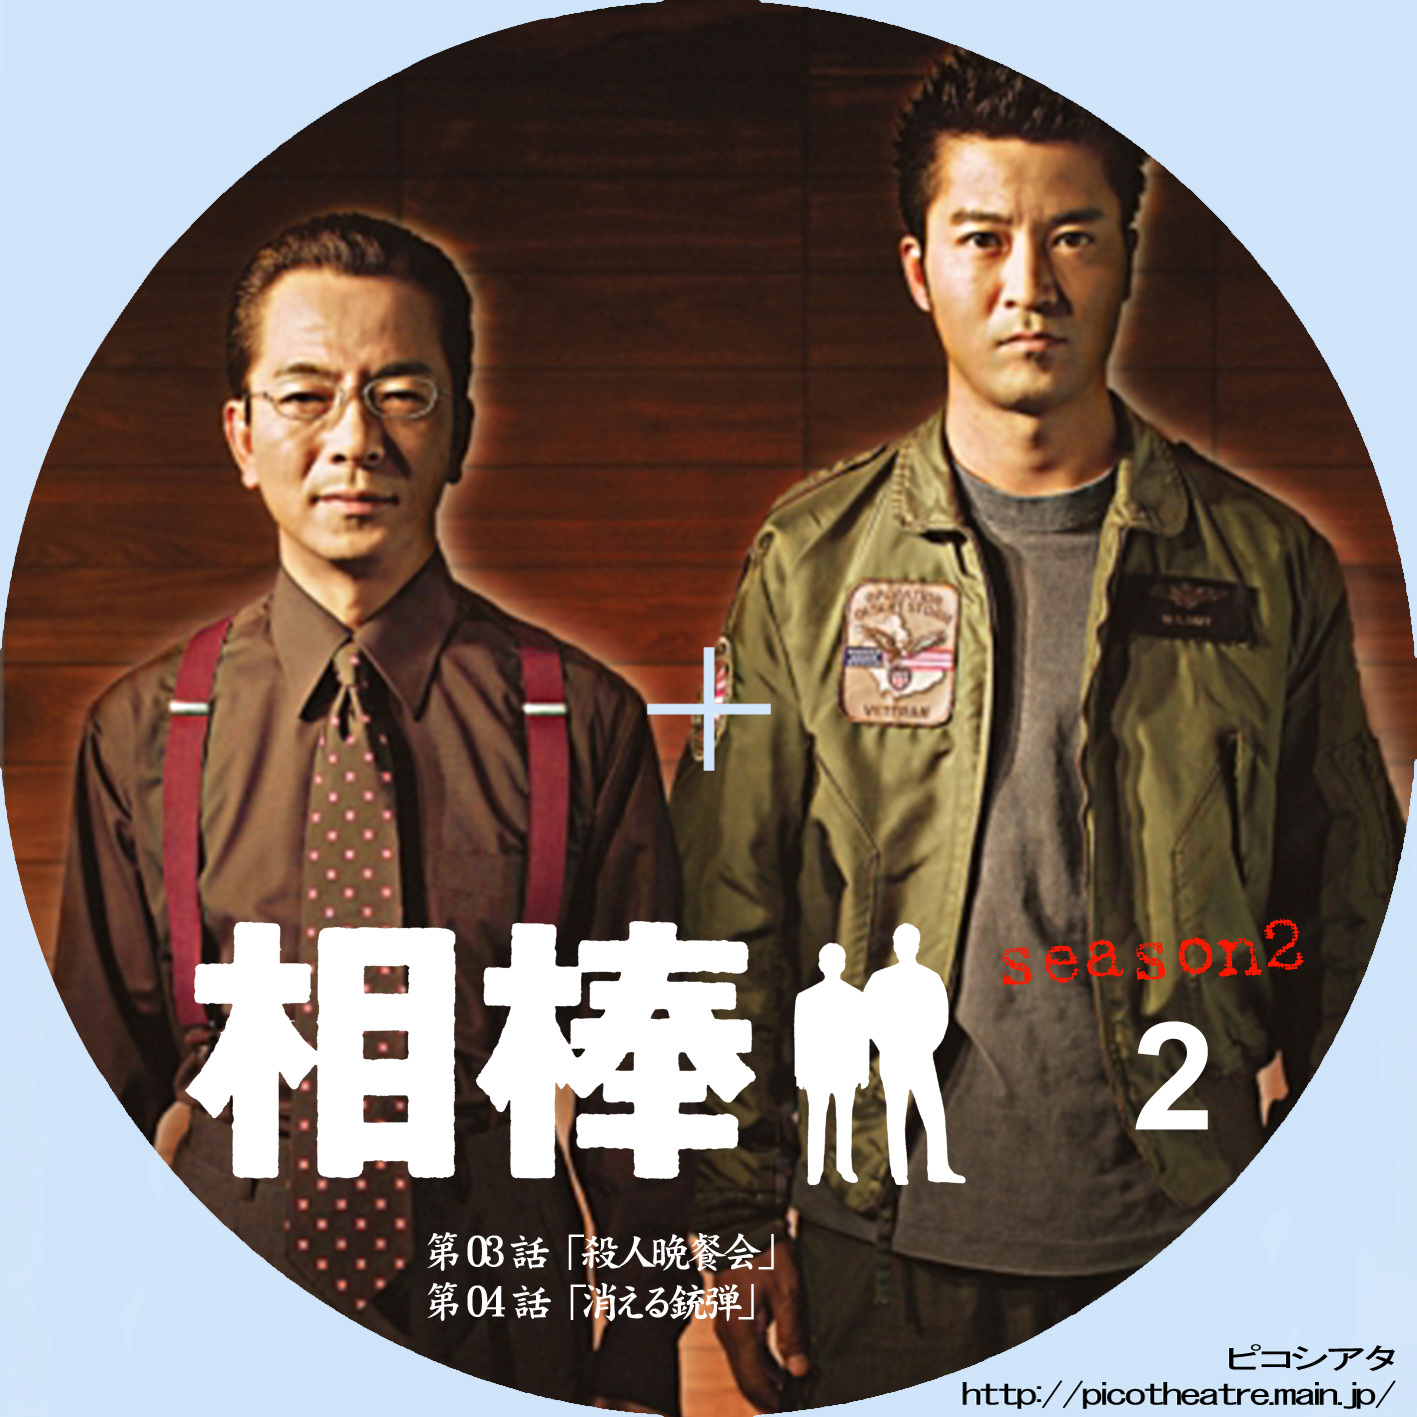 相棒 season 2 02 | DVDラベルギャラリー